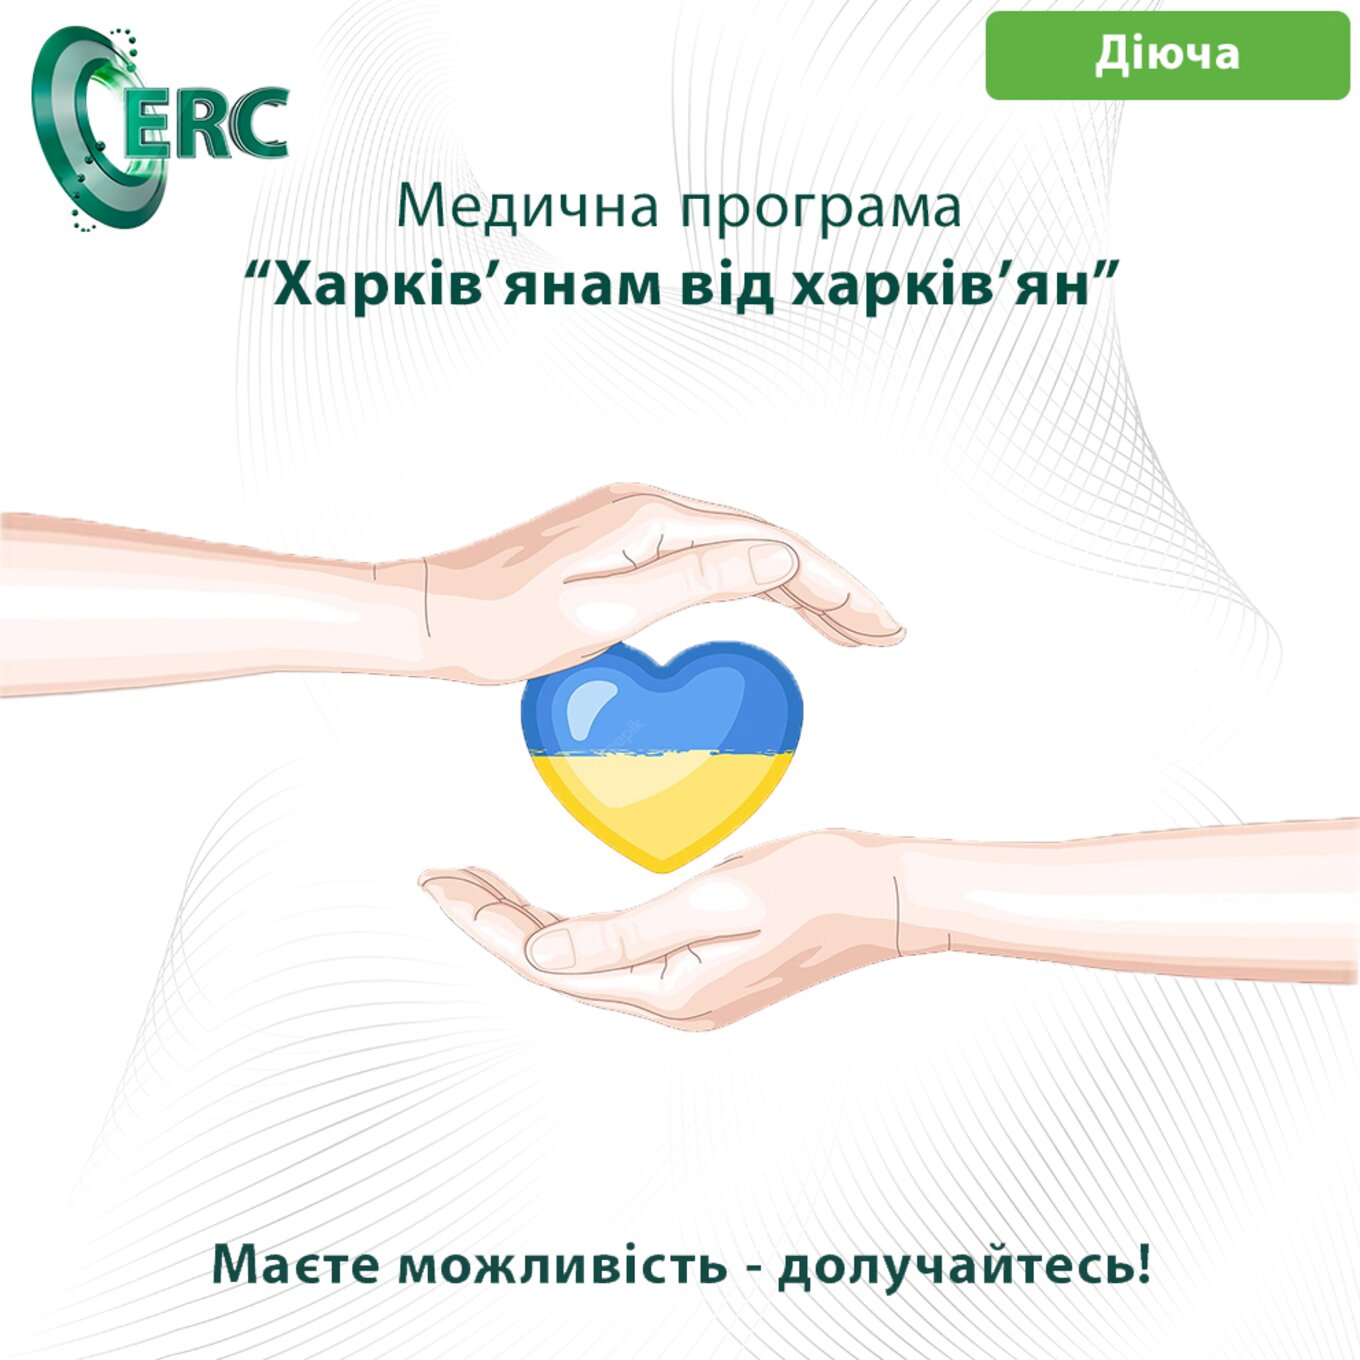 Медична допомога «Харків'янам від харків'ян»